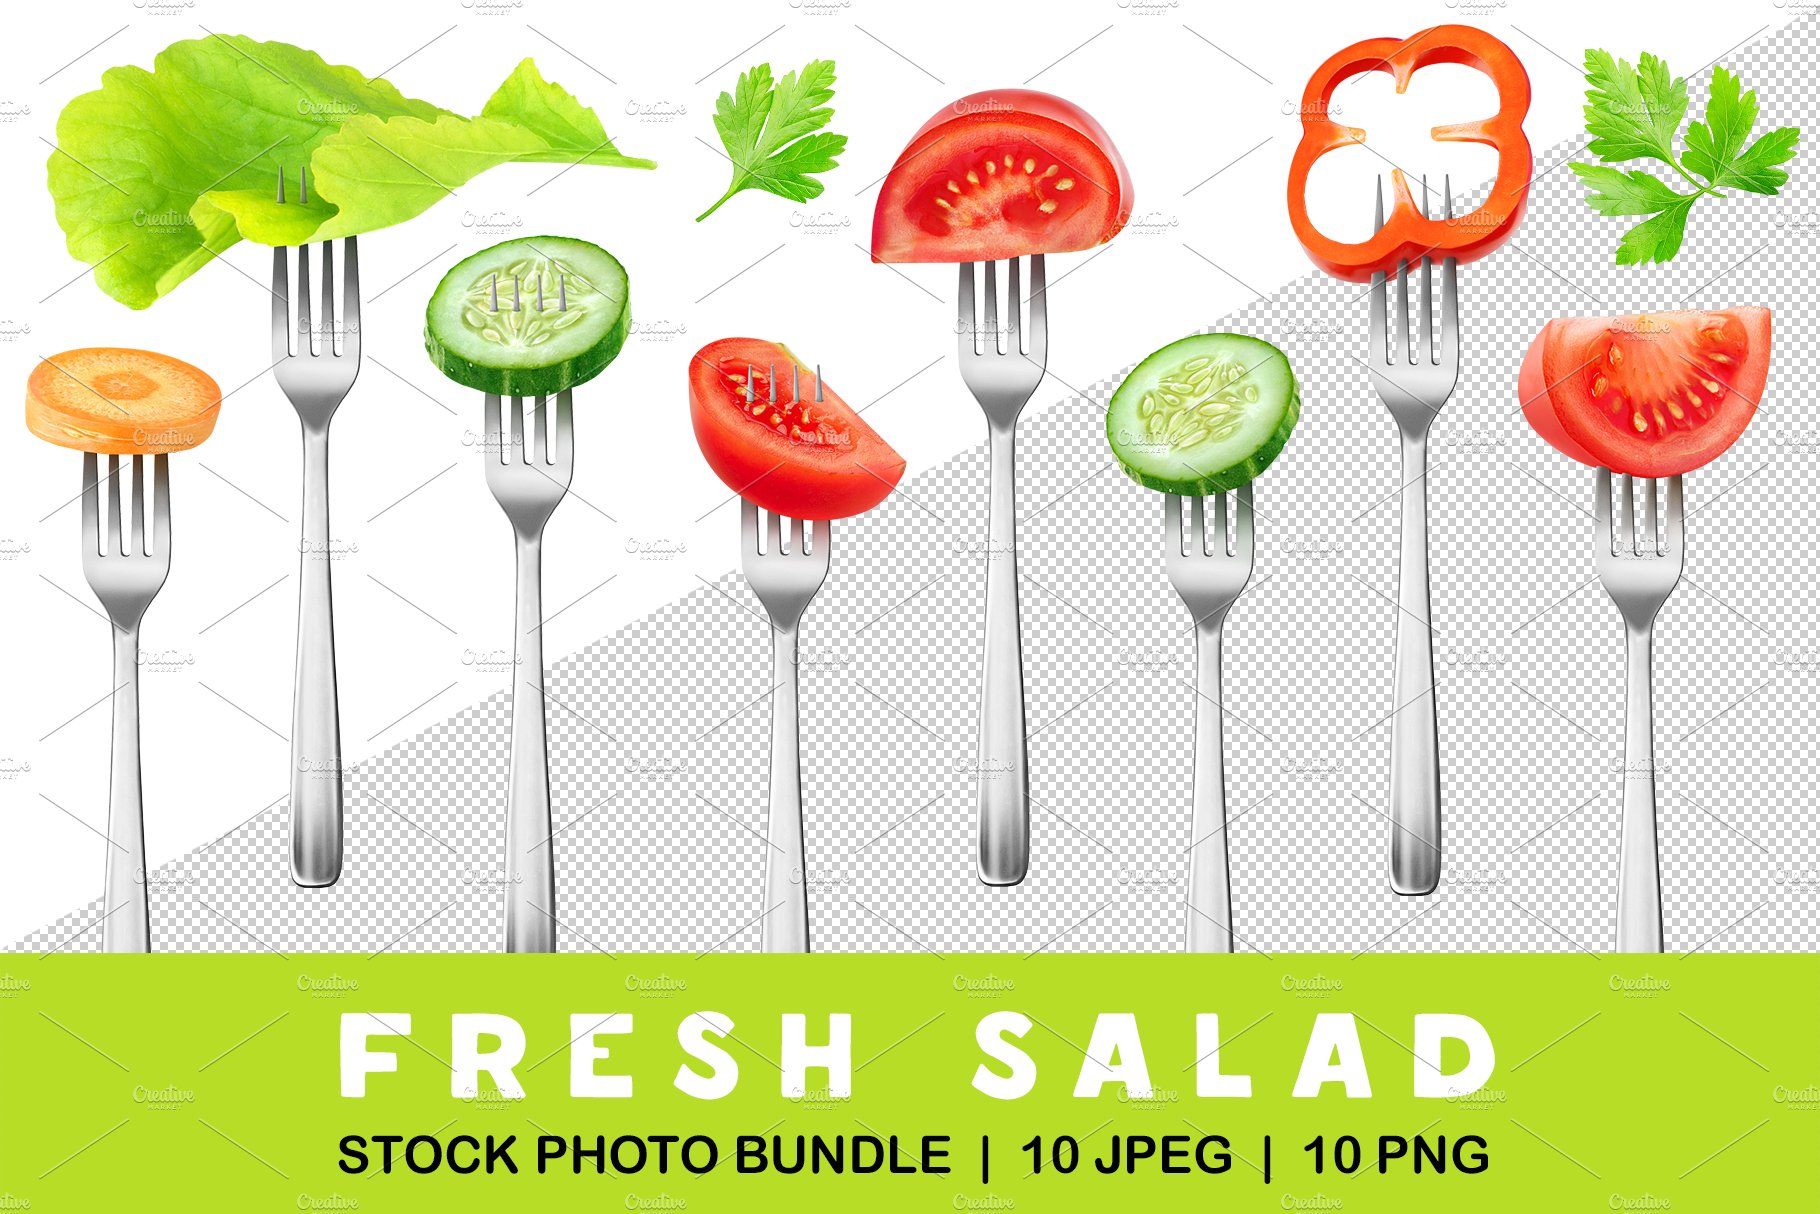 Cut salad vegetables on forks cover image.